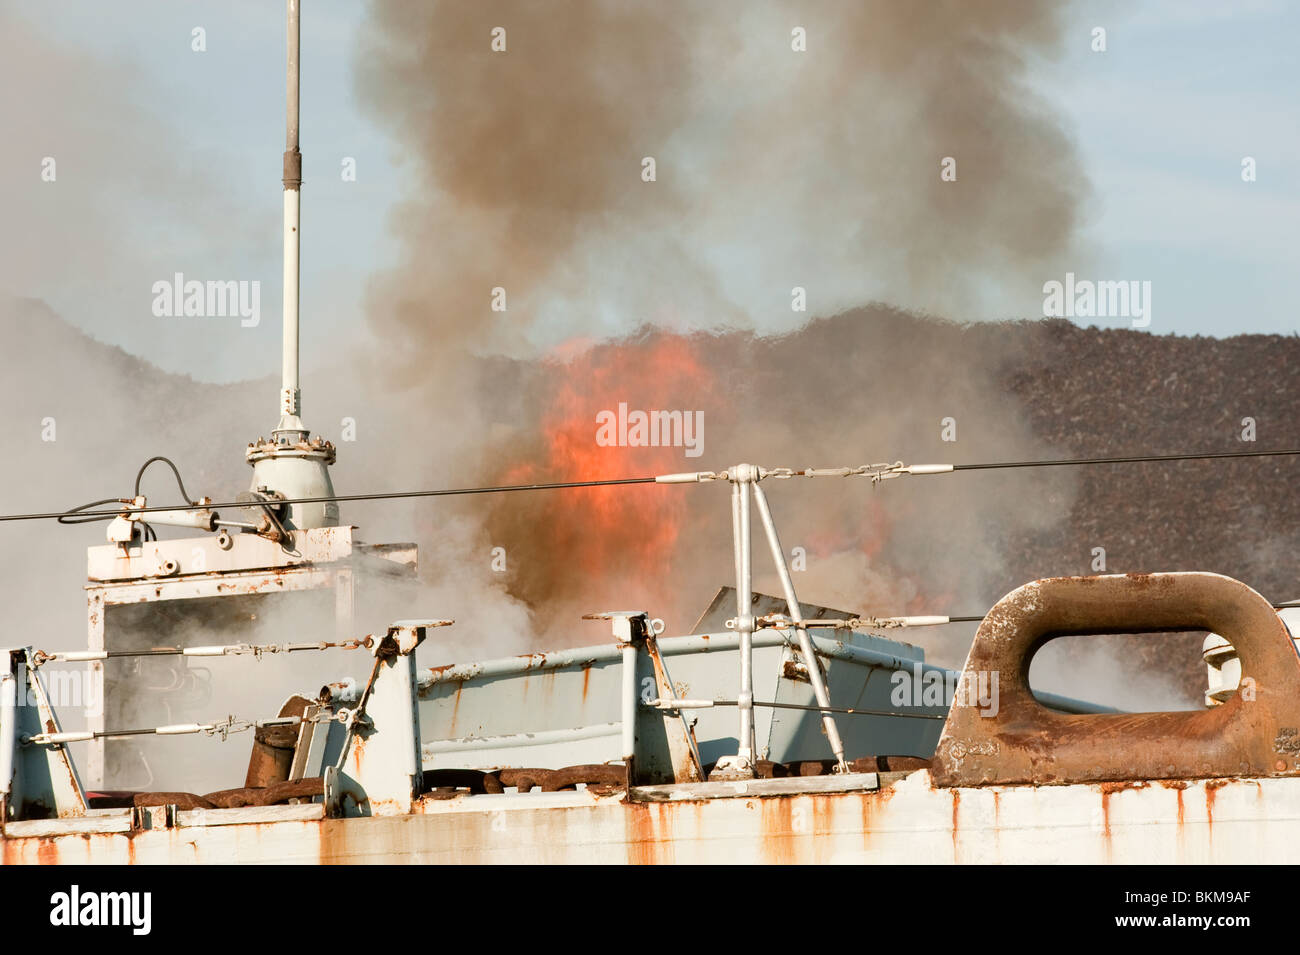 Ex Navy Schiff in Brand im Dock mit große Mengen an Rauch aus halten Stockfoto